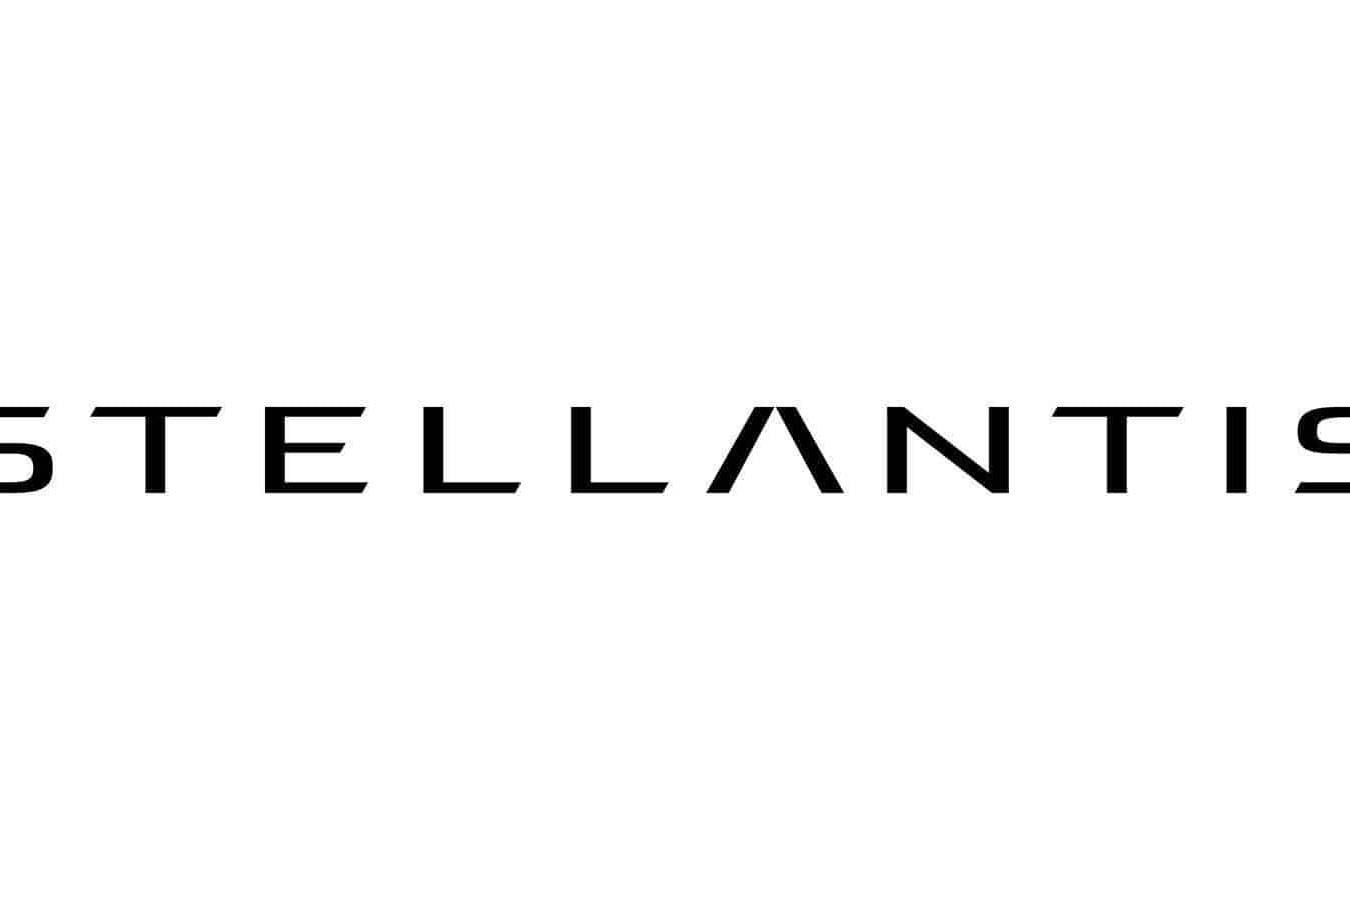 Der neue Konzern soll Stellantis heißen